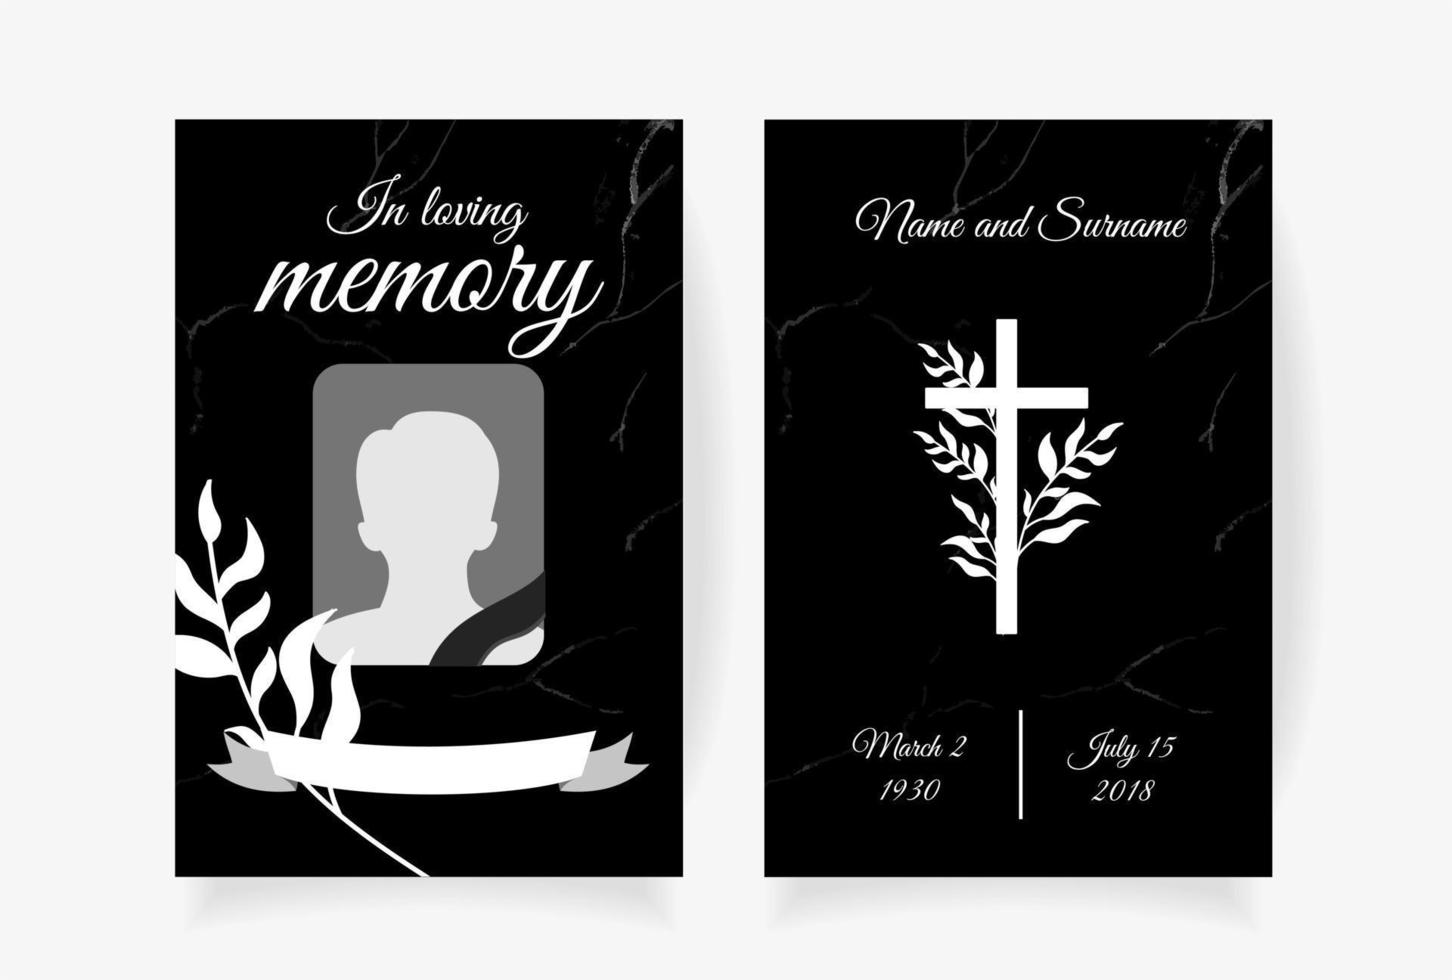 design de modelo de cartão funeral com galhos colocados sob o nome cruzado da foto e as datas da morte. ilustração vetorial em preto e branco vetor